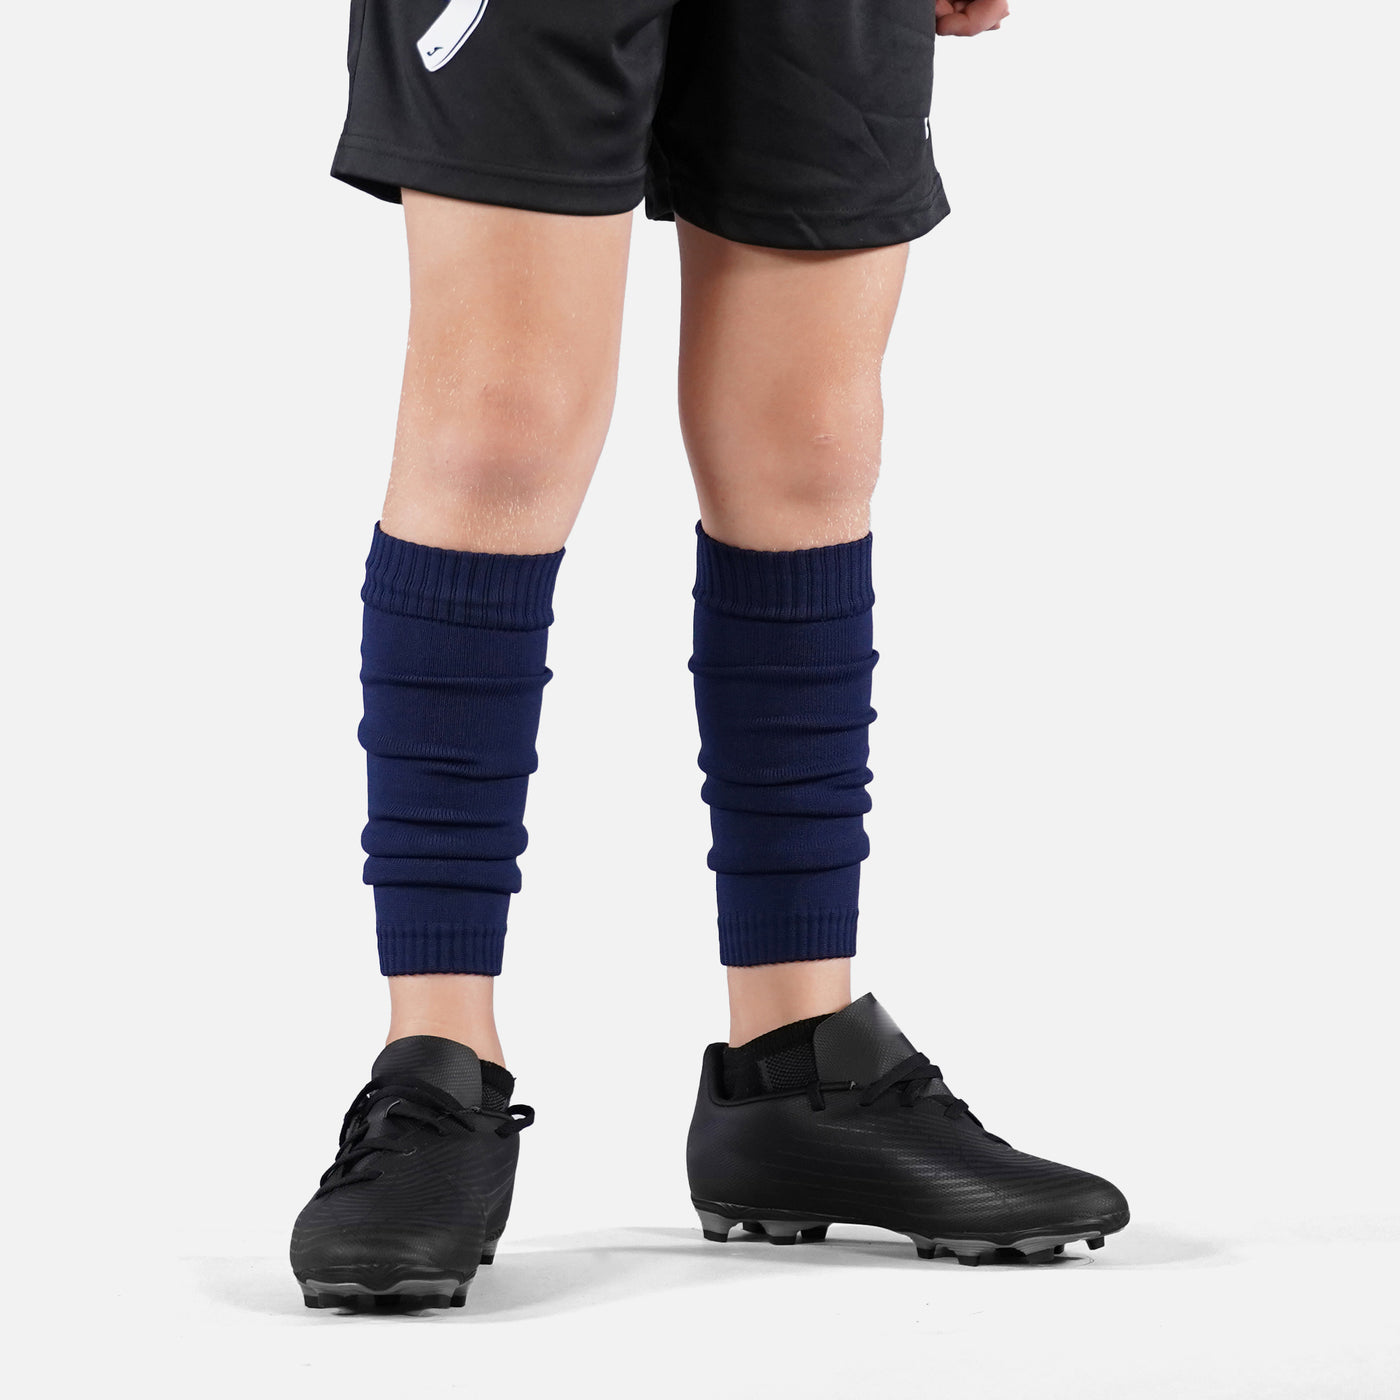 Hue Navy Kids Scrunchie Leg Sleeves